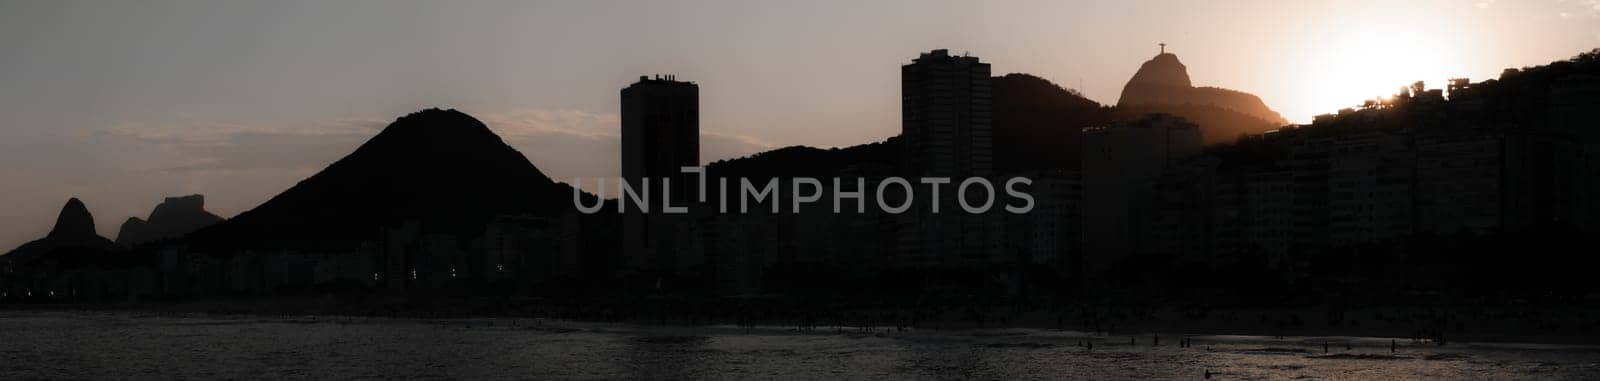 Sunset Silhouette of Rio de Janeiro Skyline and Beach by FerradalFCG